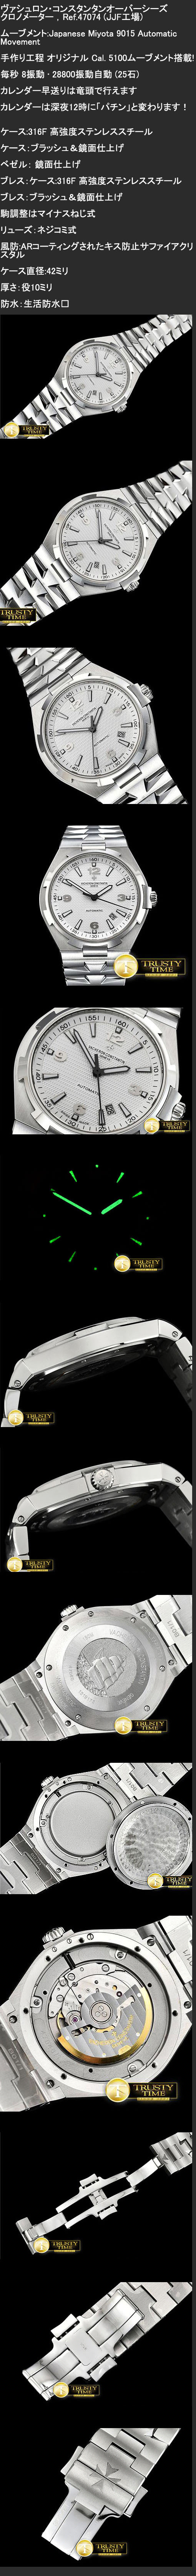 ヴァシュロン・コンスタンタンオーバーシーズ　クロノメーター Ref.47074時計を買う必要がありますか？